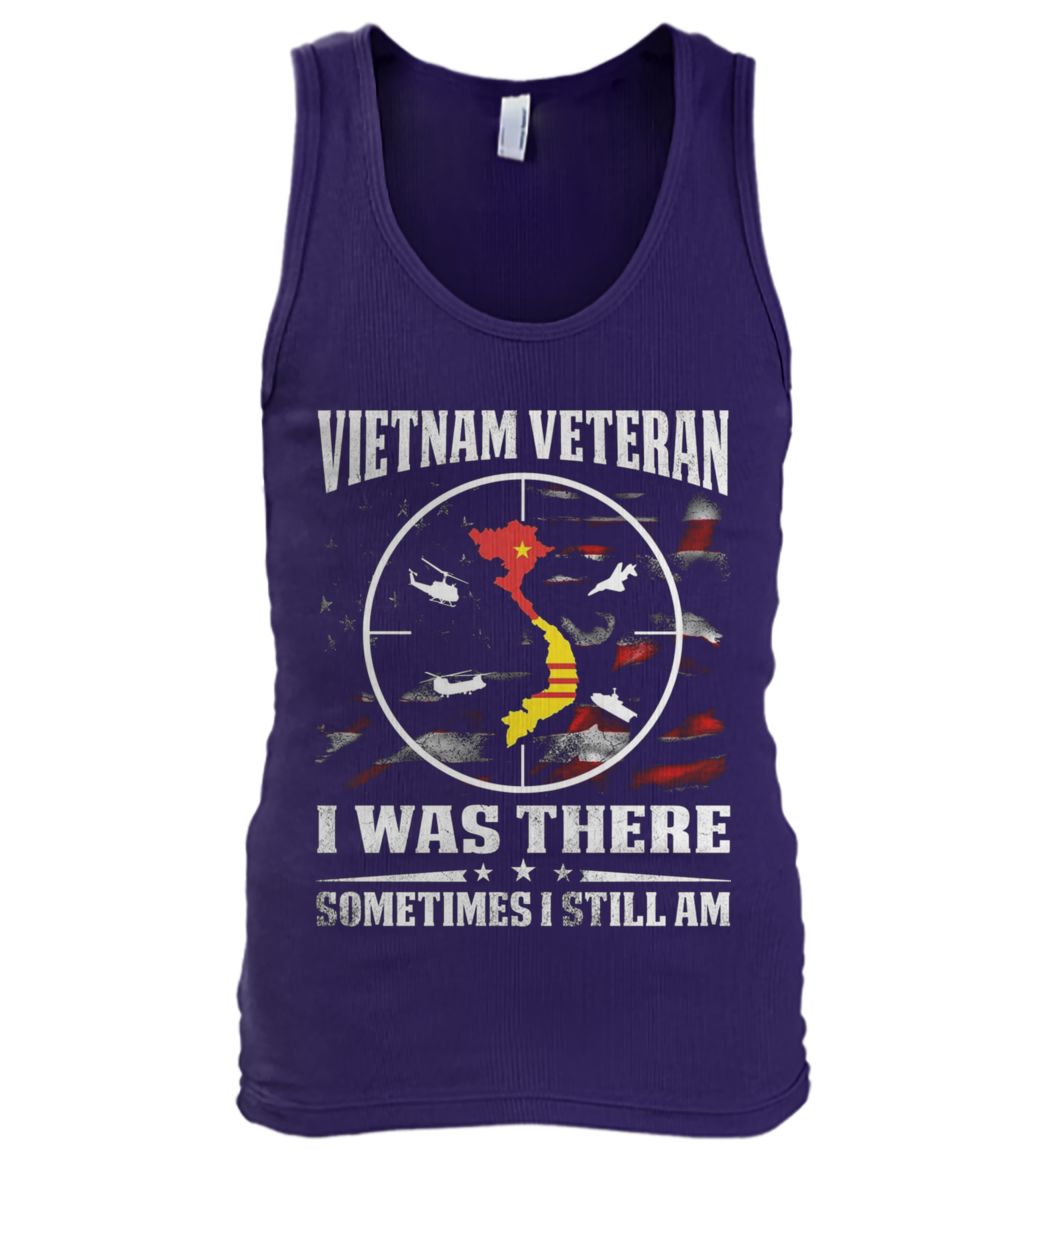 Vietnam veteran I was there sometimes I still am men's tank top